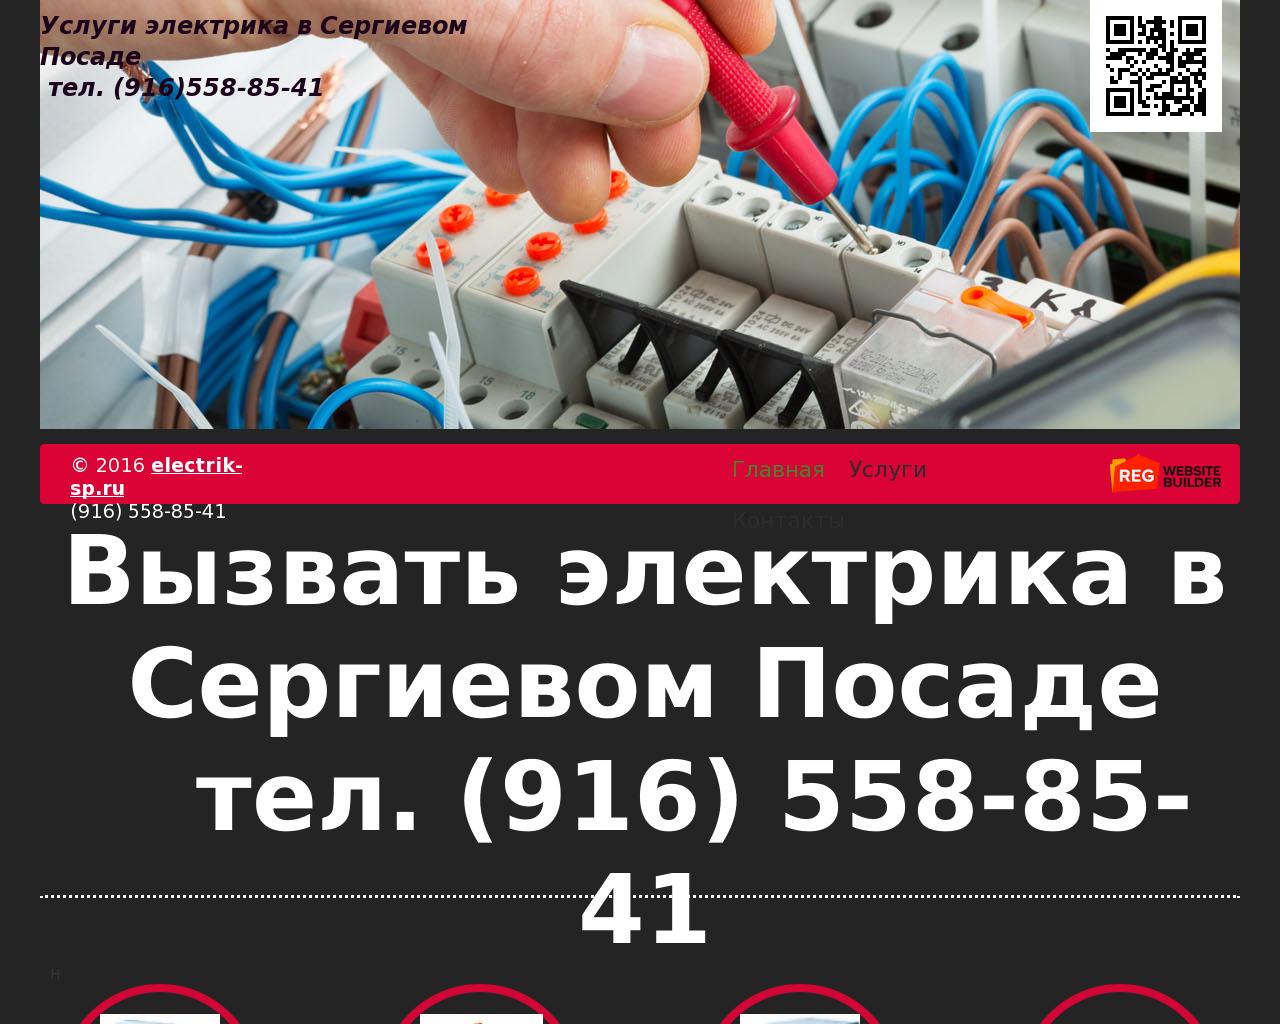 Изображение сайта electrik-sp.ru в разрешении 1280x1024